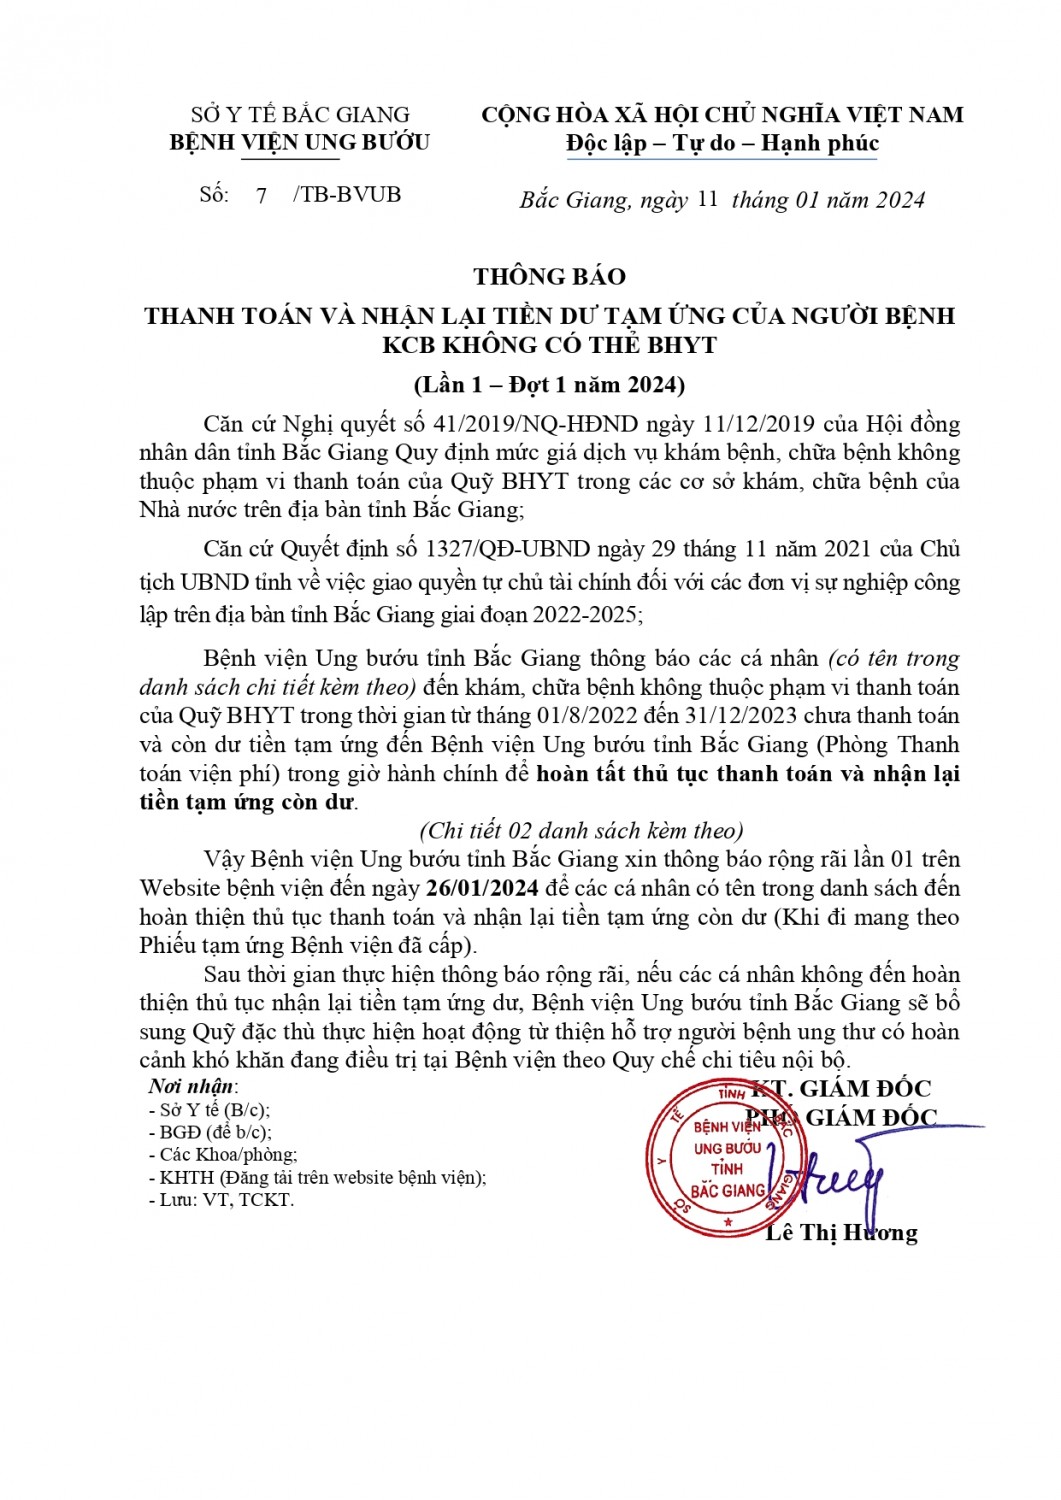 TB 7 11012024 Thông báo BN chưa nhận tiền hoàn ứng lần 1 2024 signed signed signed signed page 0001